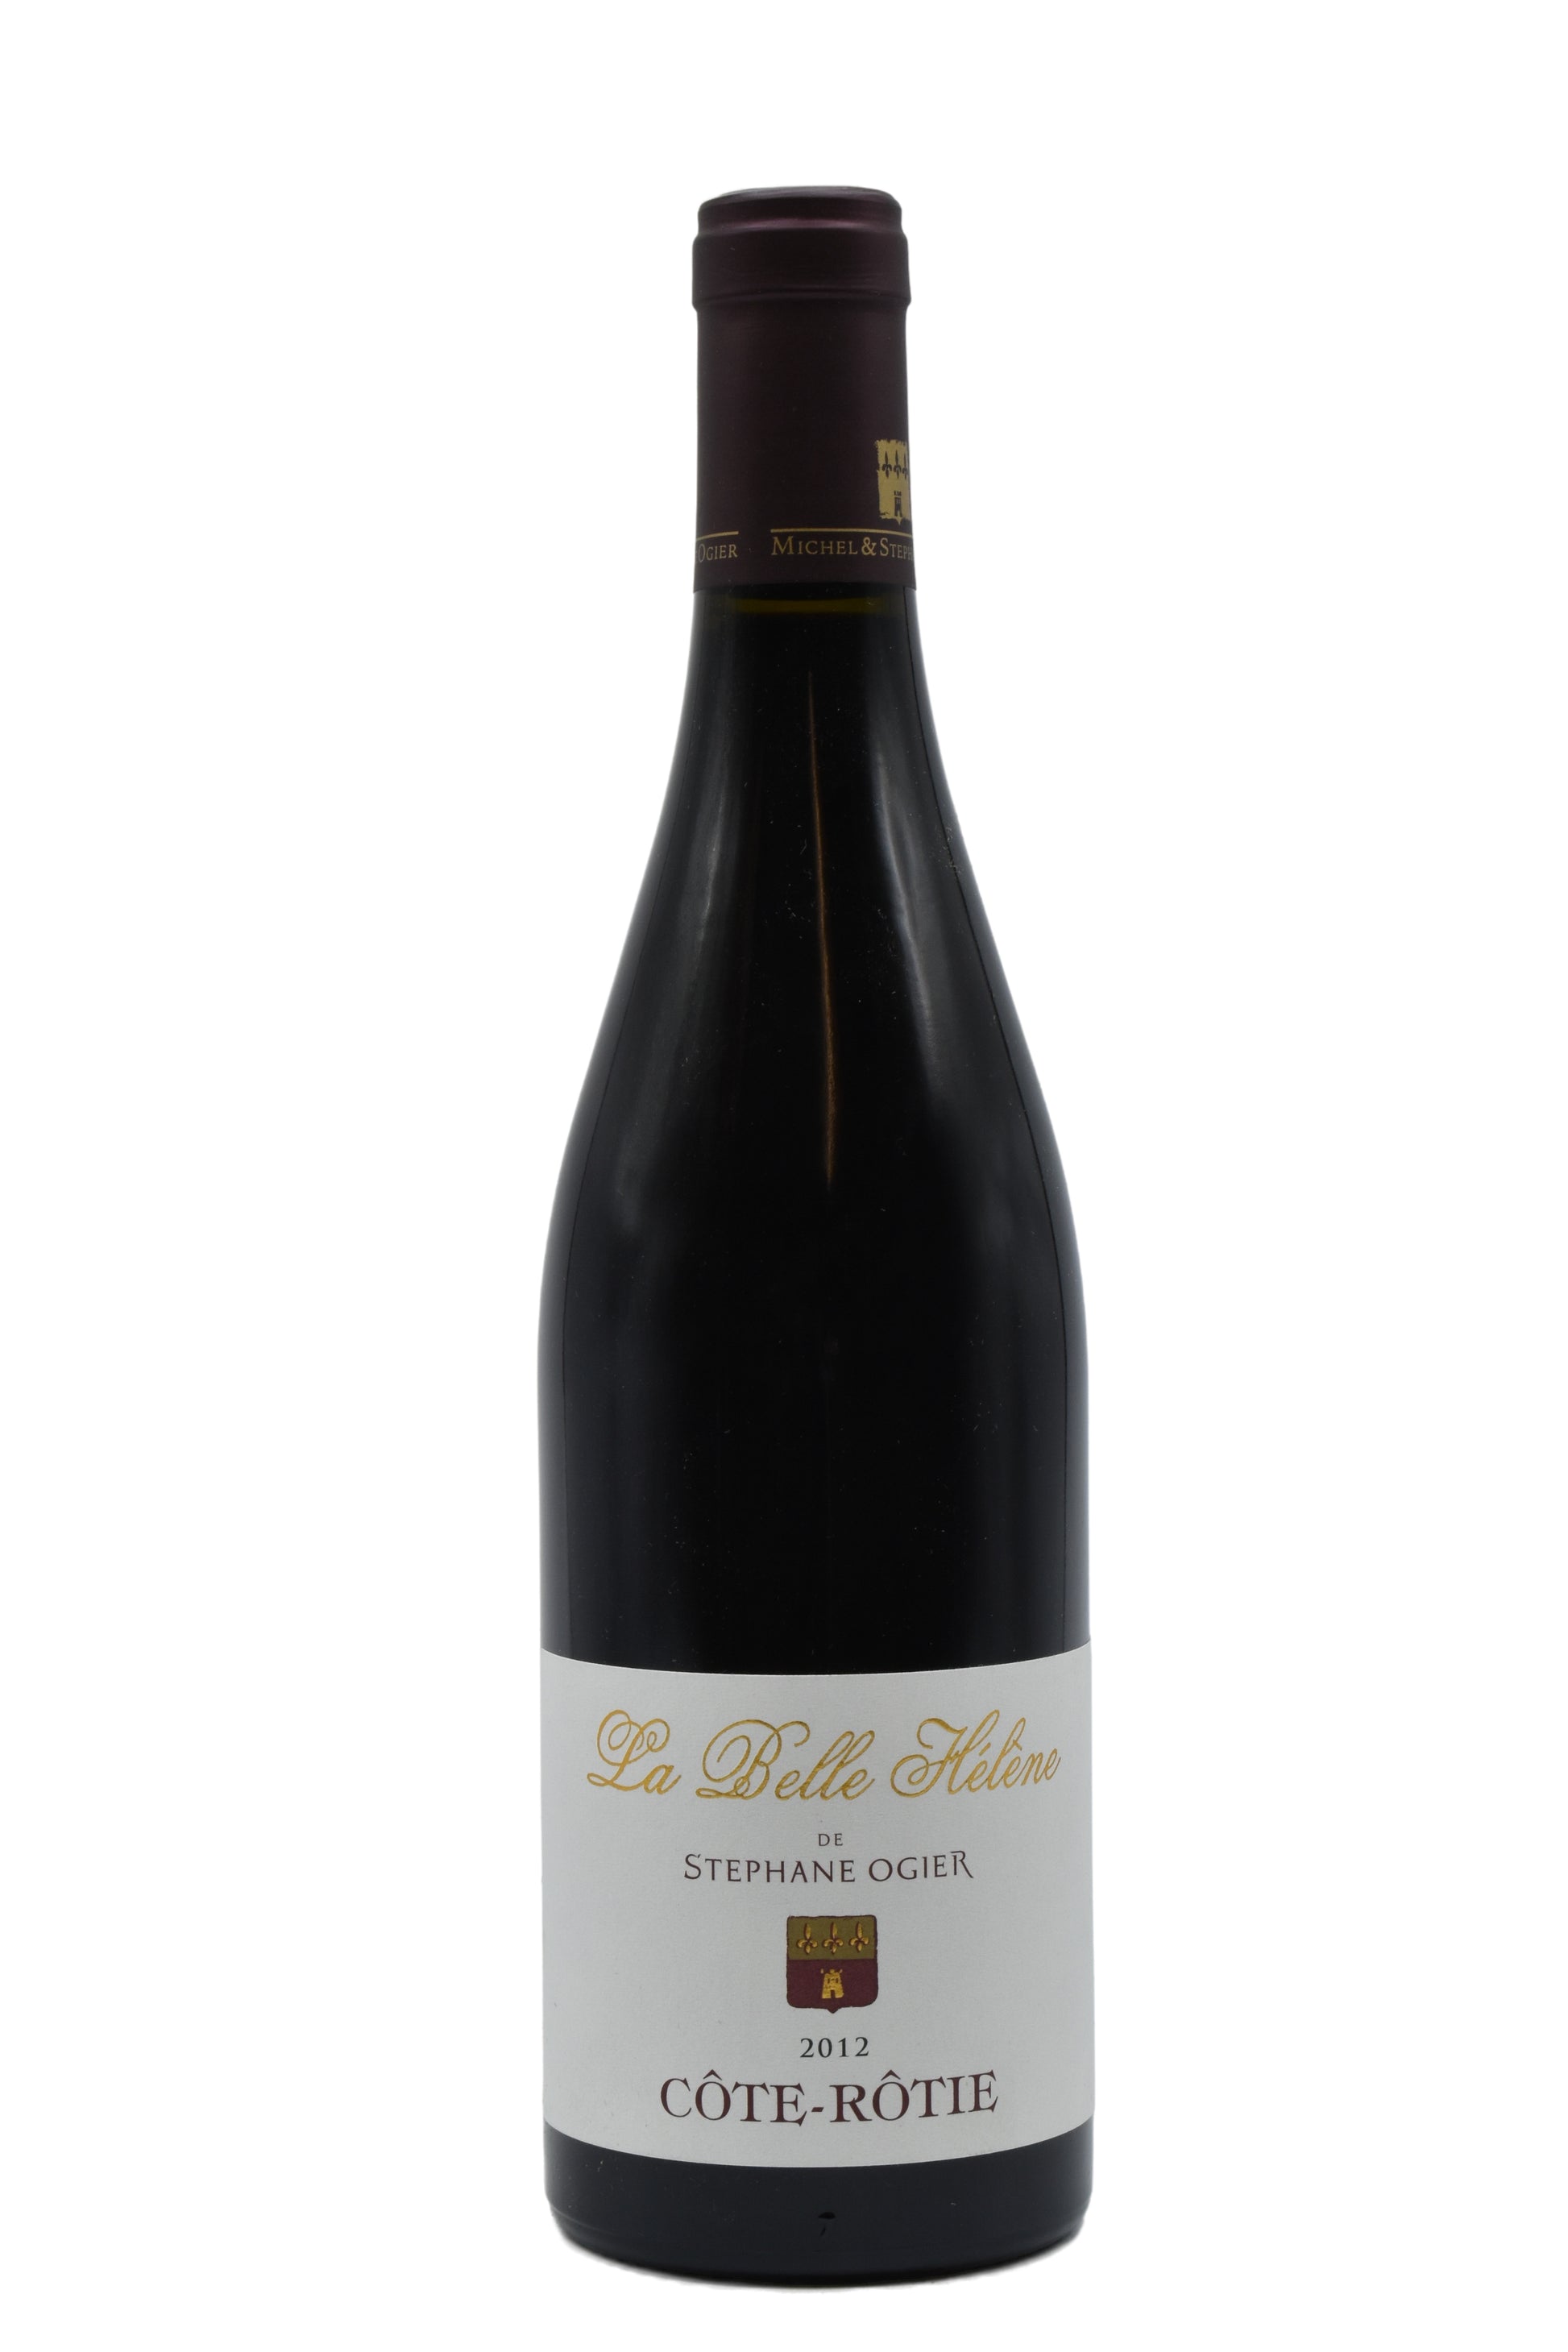 2012 Michel & Stephane Ogier Cote Rotie La Belle Helene 750ml - Walker Wine Co.